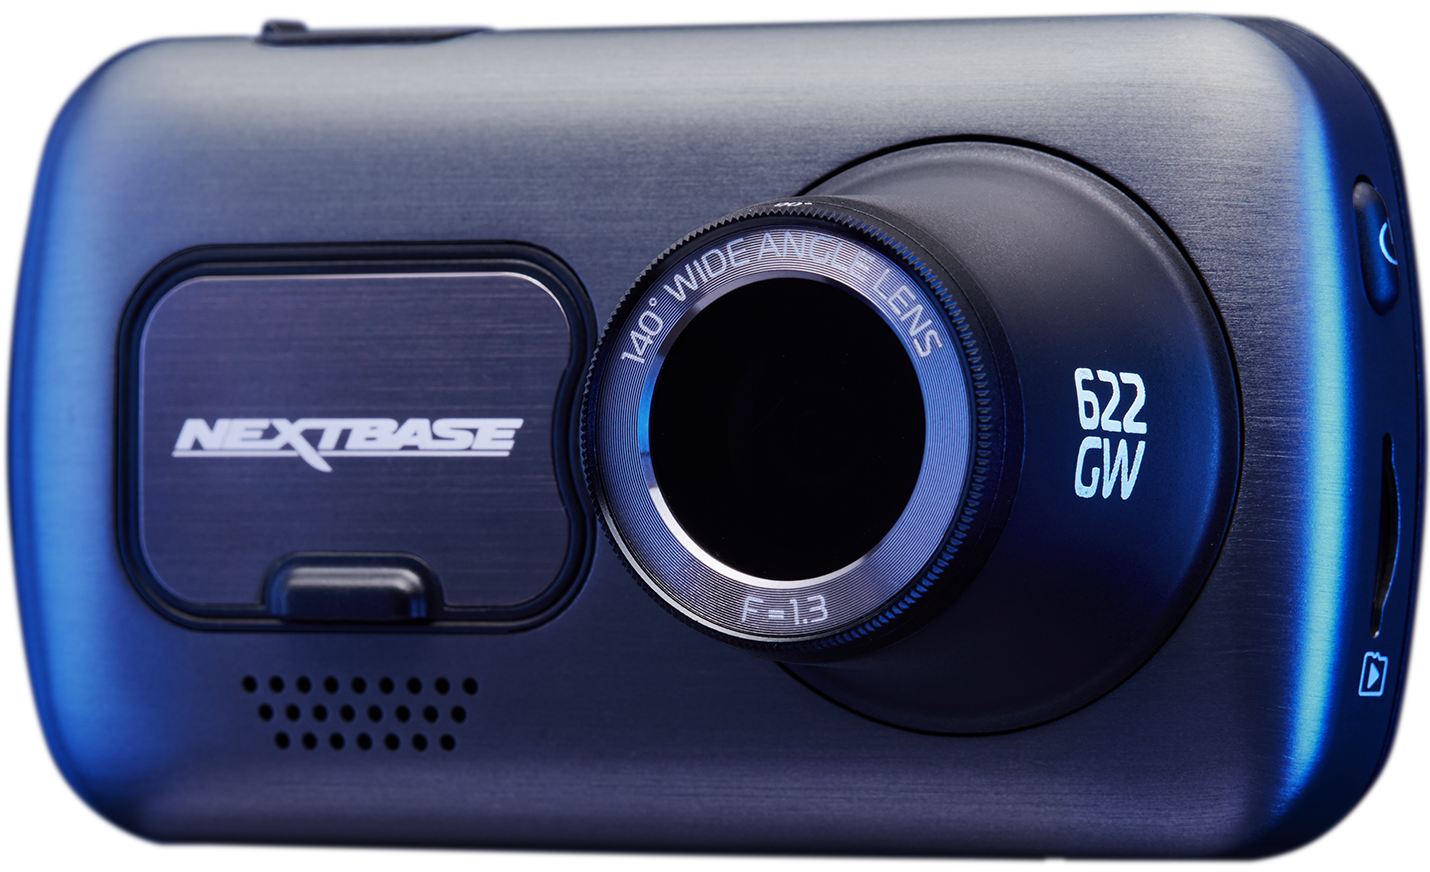 Beste 4K dashcam elektrische auto Nextbase 622GW